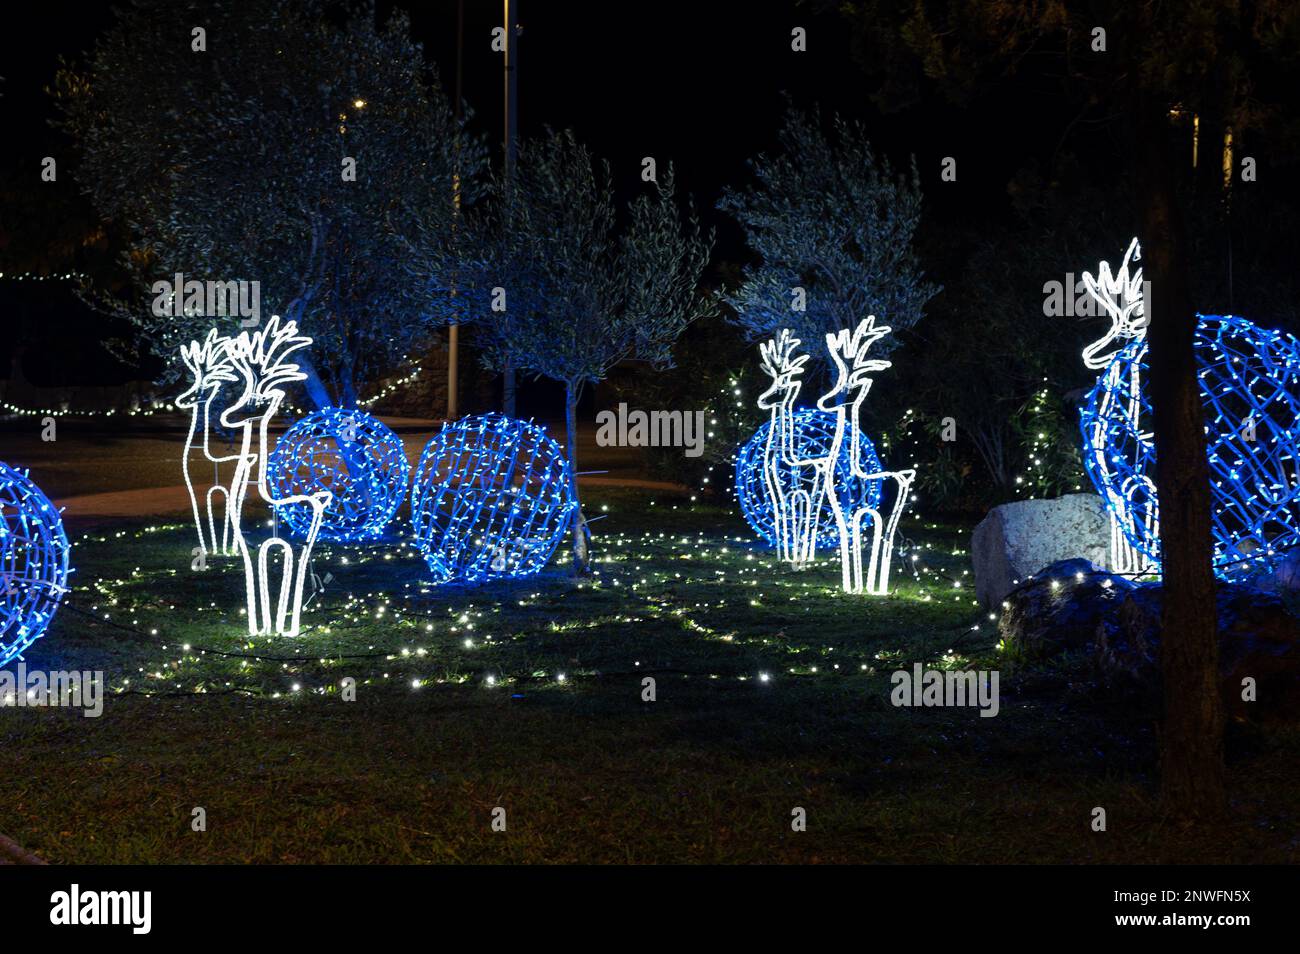 Décorations lumineuses de Noël, rennes blancs et boules bleues sur un tapis d'herbe Foto Stock